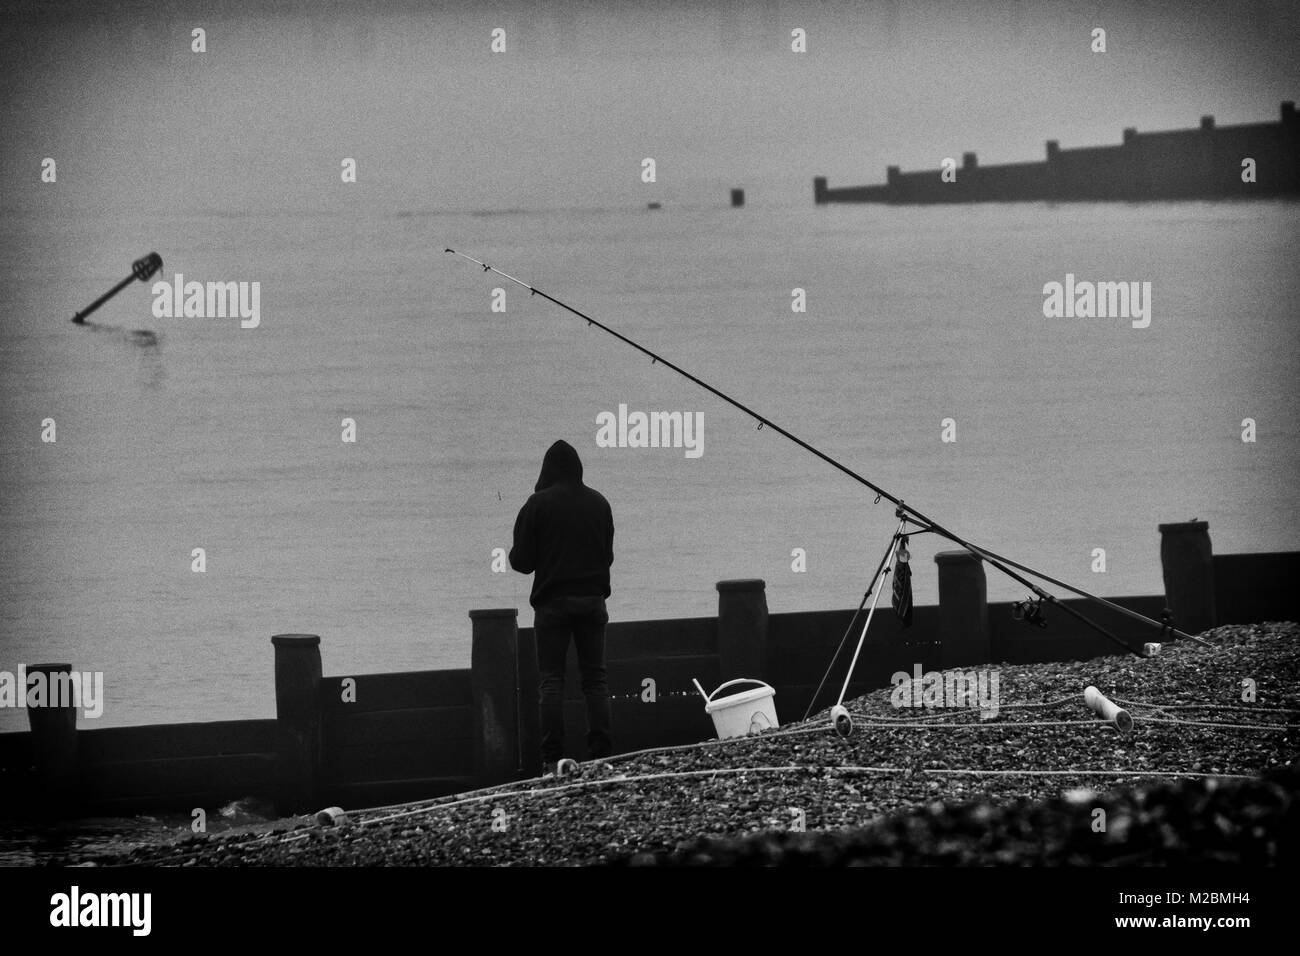 Einsamer Strand Fischer im Winter auf einem britischen Strand, in Schwarz und Weiß Stockfoto